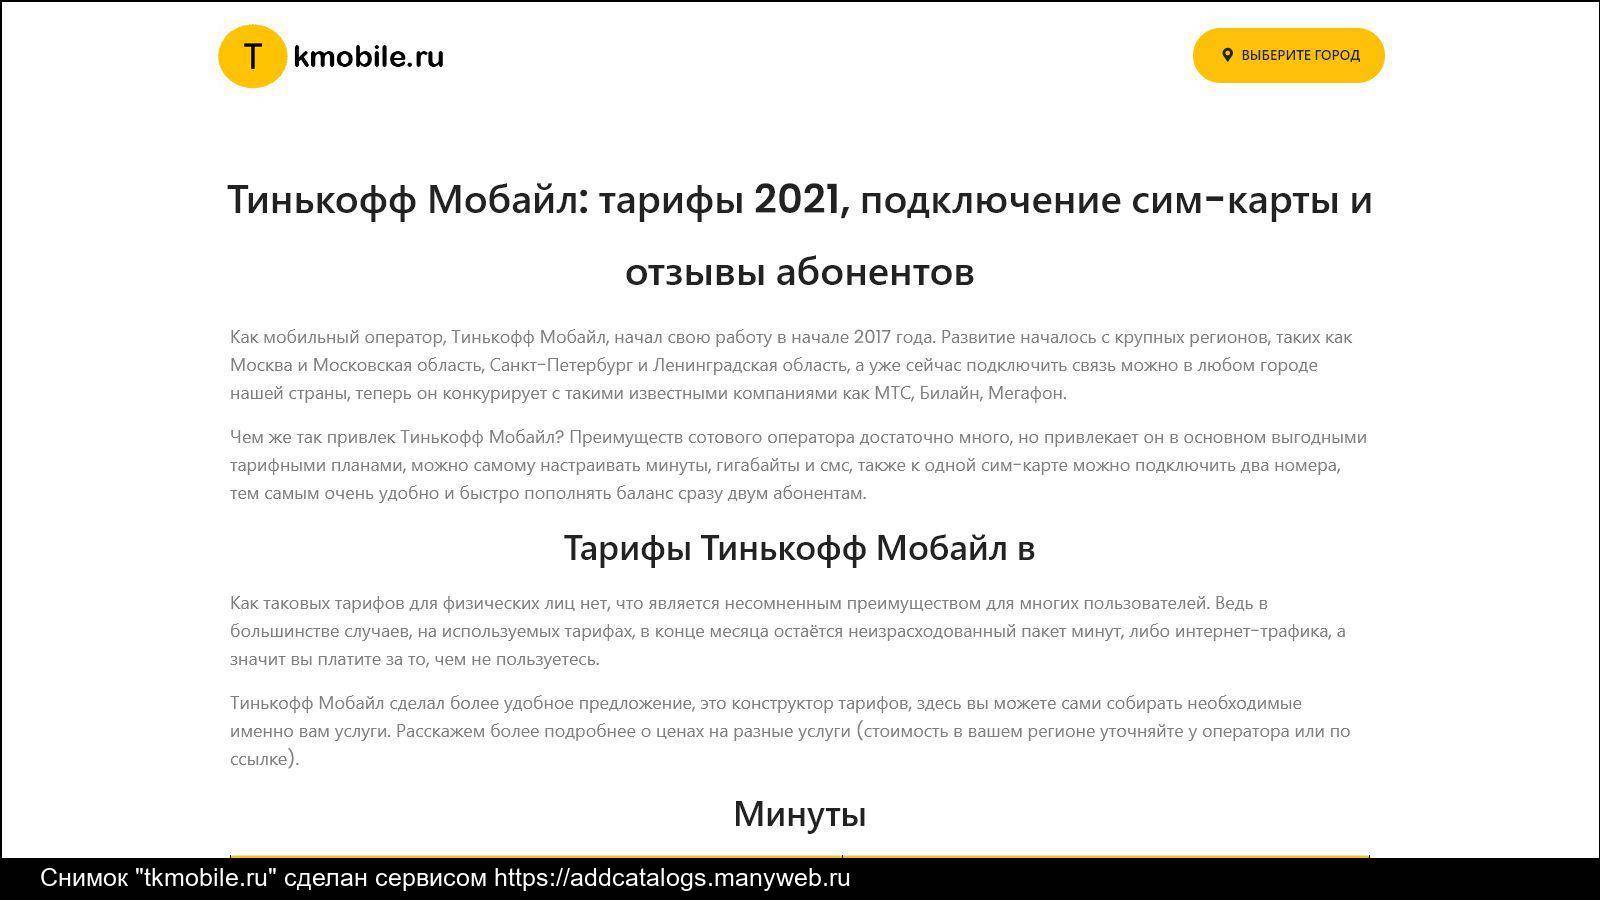 «тинькофф мобайл» официально заработал в россии — тарифы, условия, как подключить